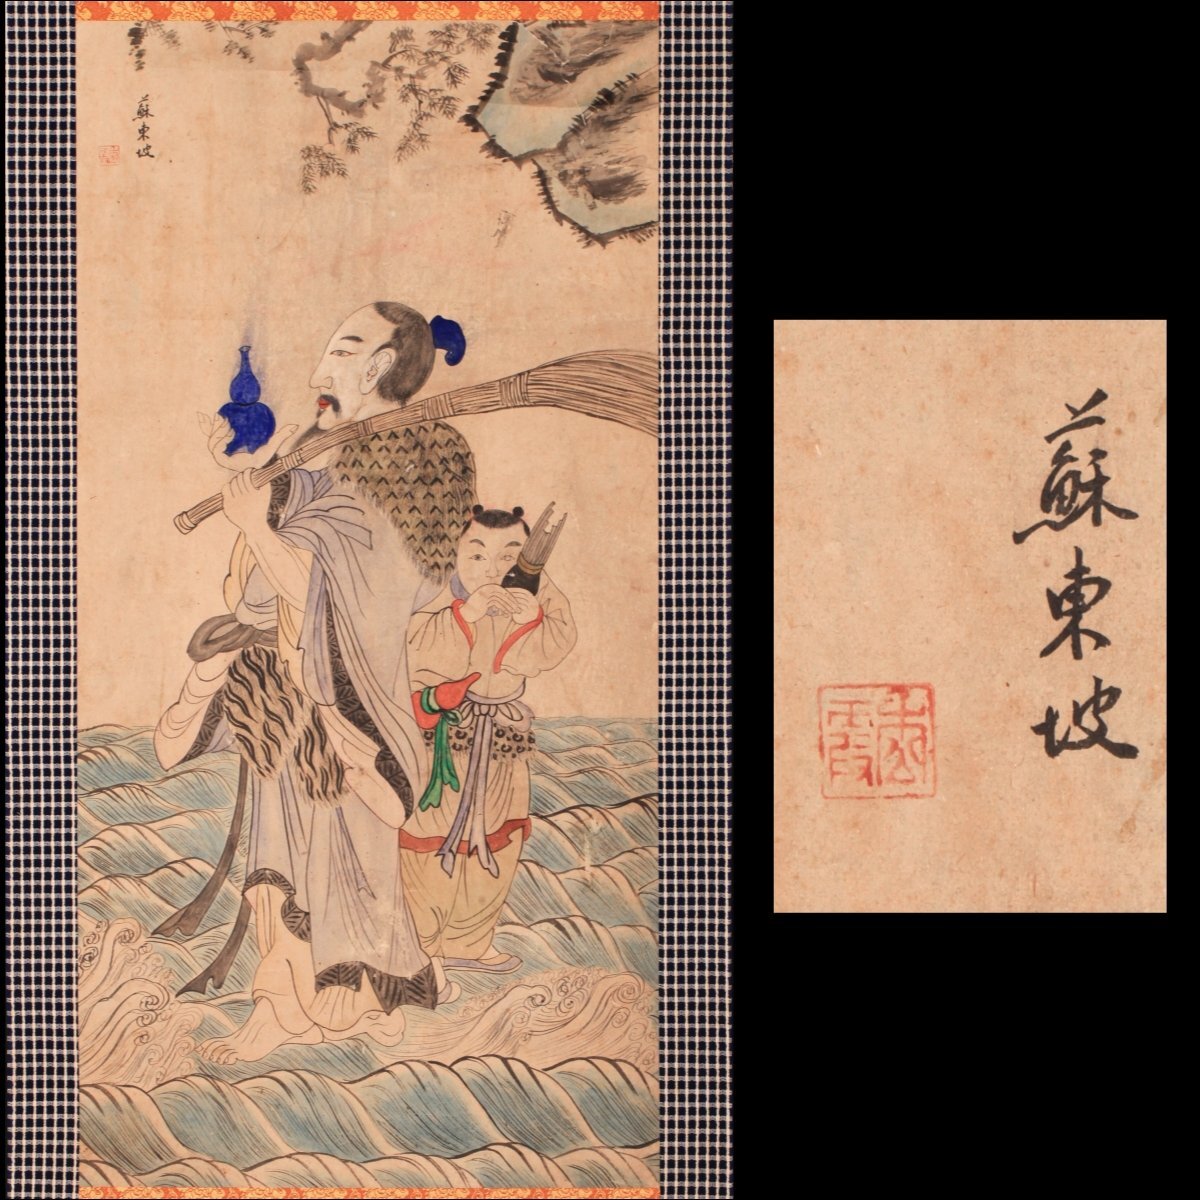 [Collection musicale] [Copie] Statue de la dynastie Ri de la dynastie Su Dongpo Yi Corée Peinture folklorique Goryeo Livre broché, peinture, Peinture japonaise, personne, Bodhisattva